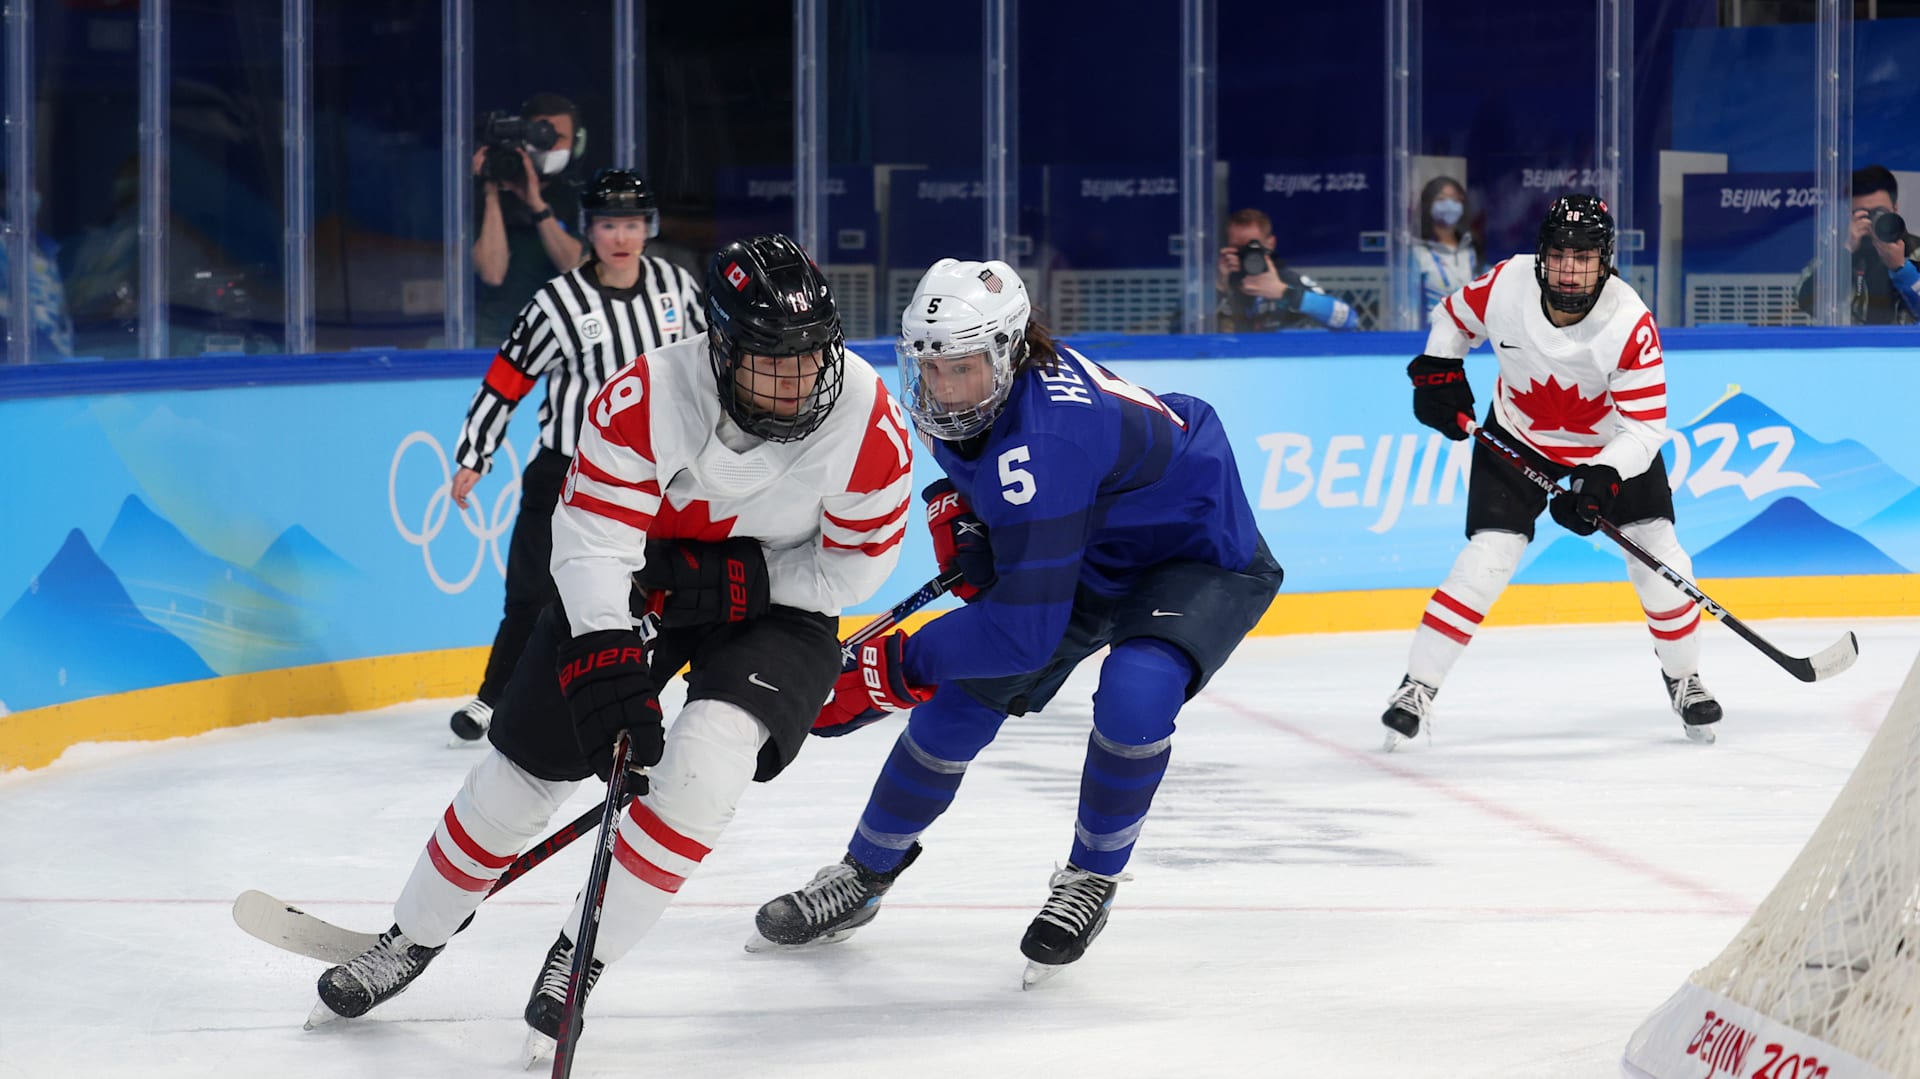 Beijing Olympics: USA vs. Canada women's hockey rivalry timeline